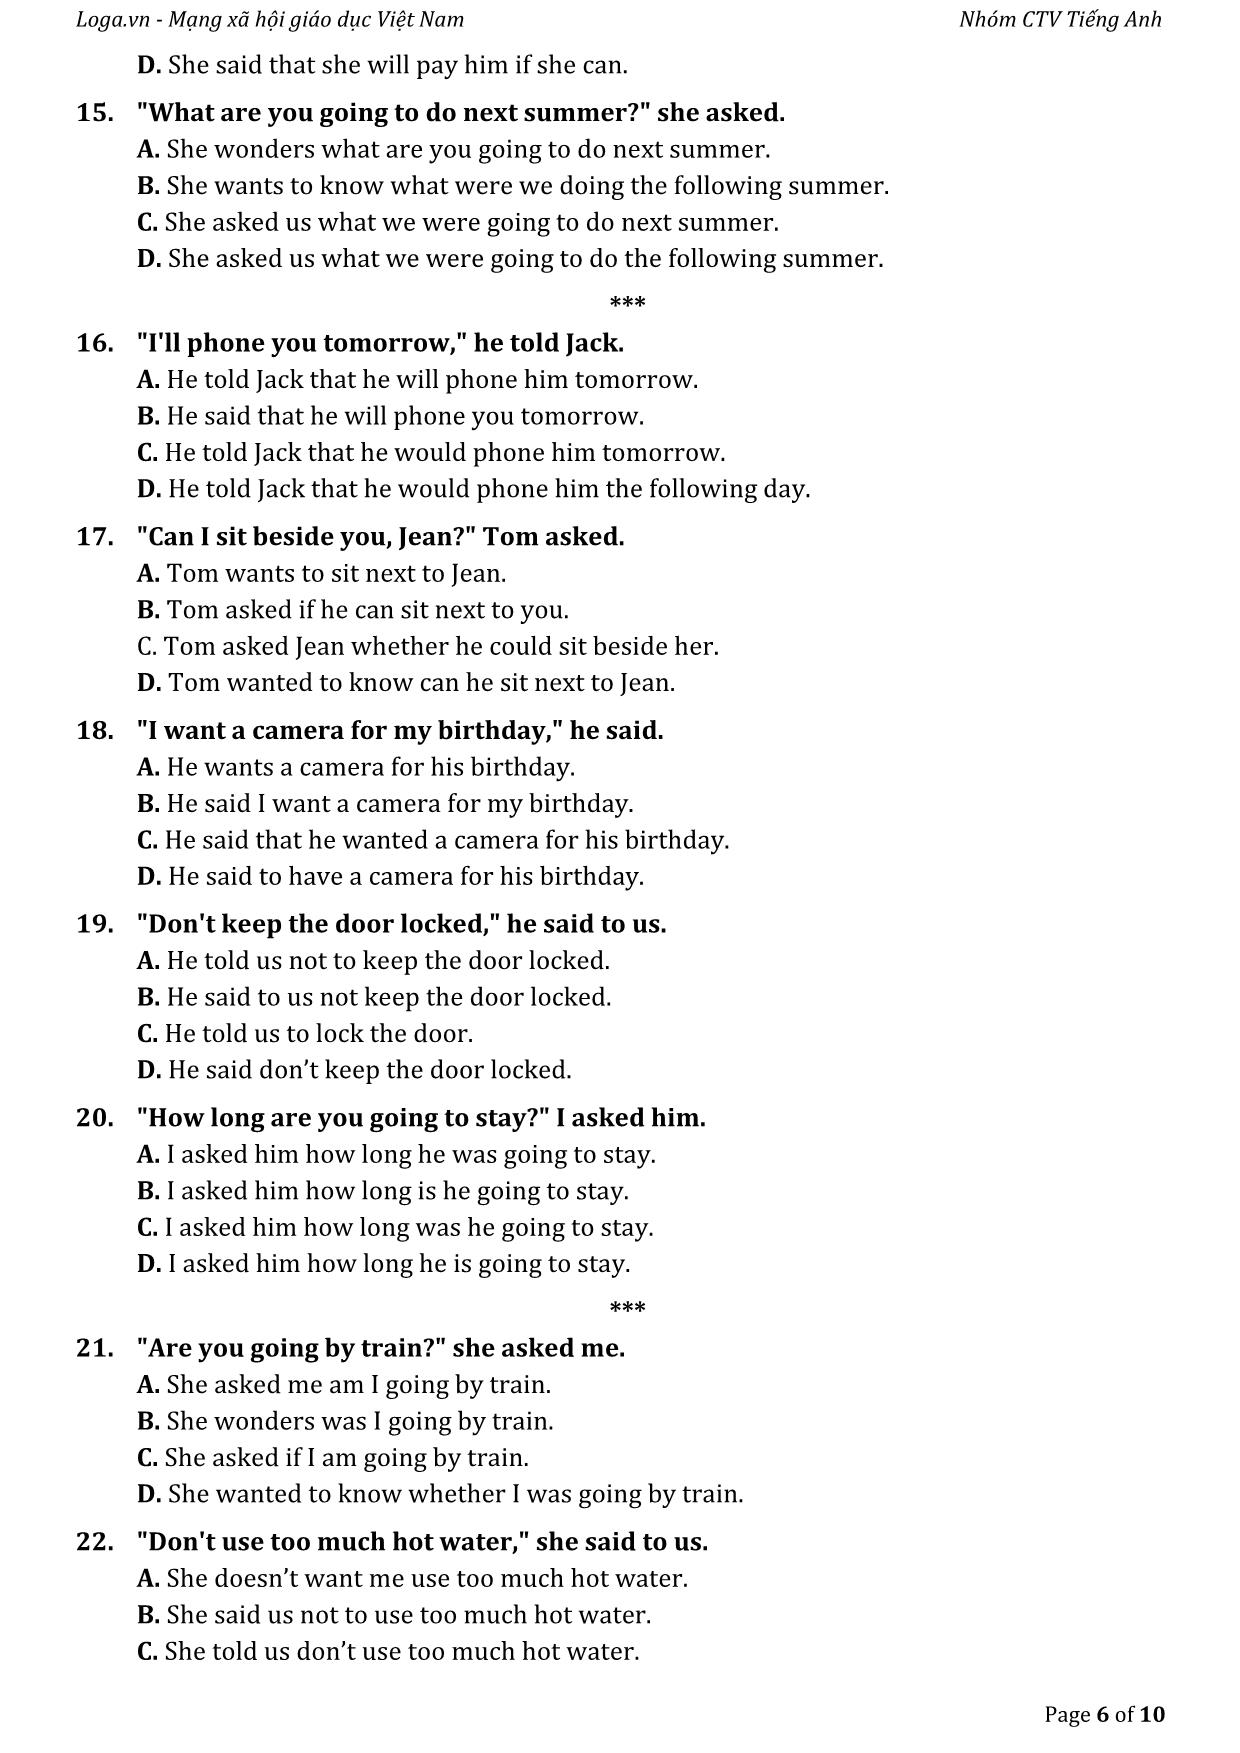 Bài tập tự luyện câu gián tiếp trong tiếng Anh trang 6